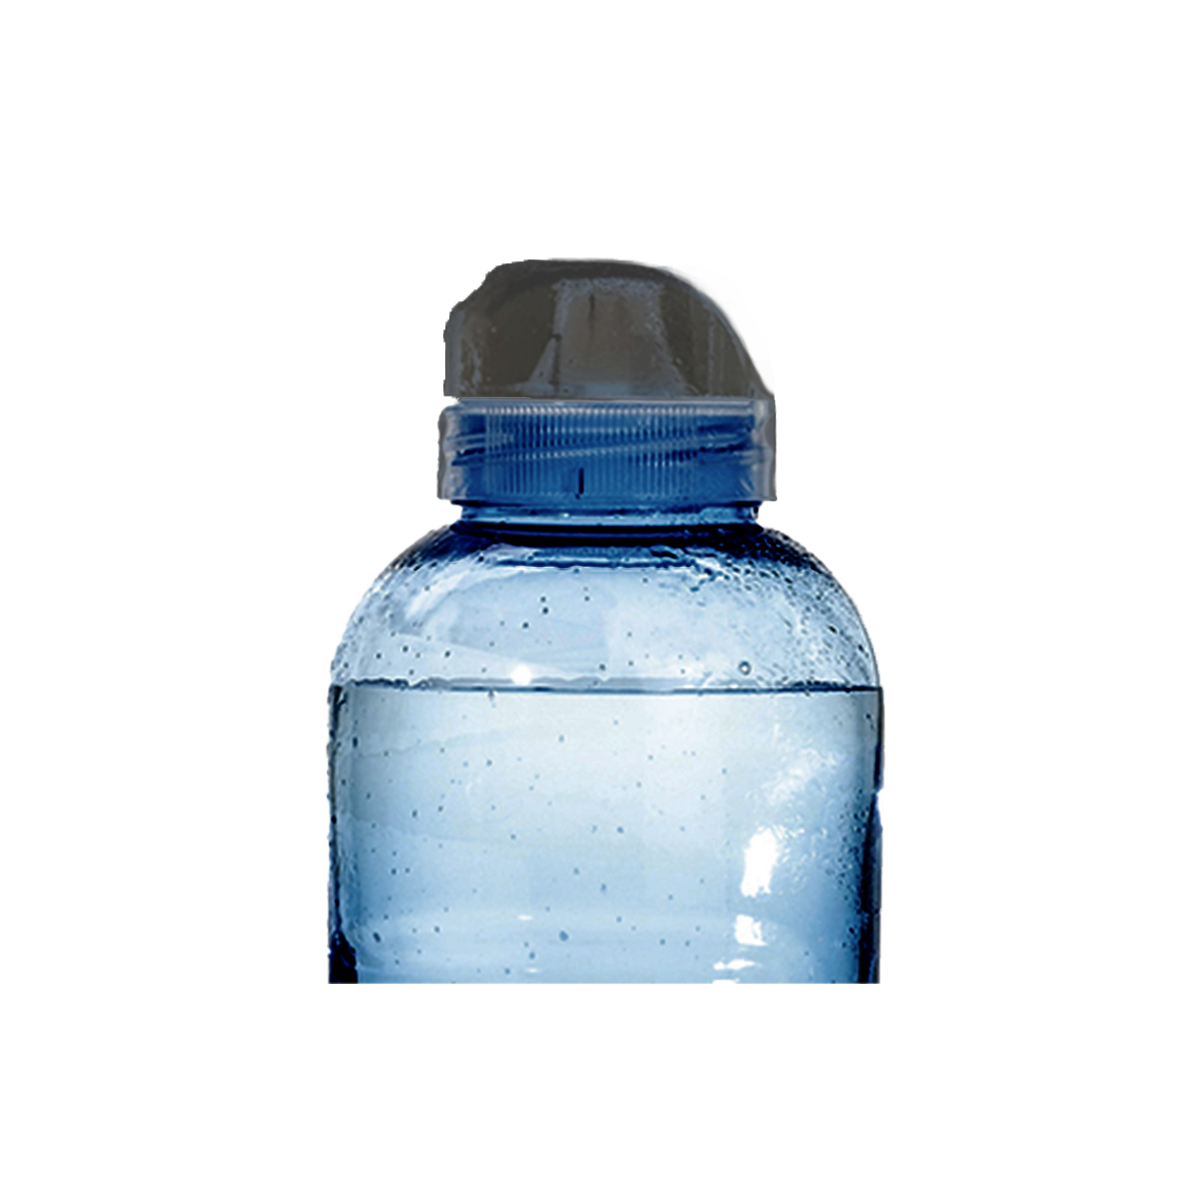 Flip-top-låg til vandflaske